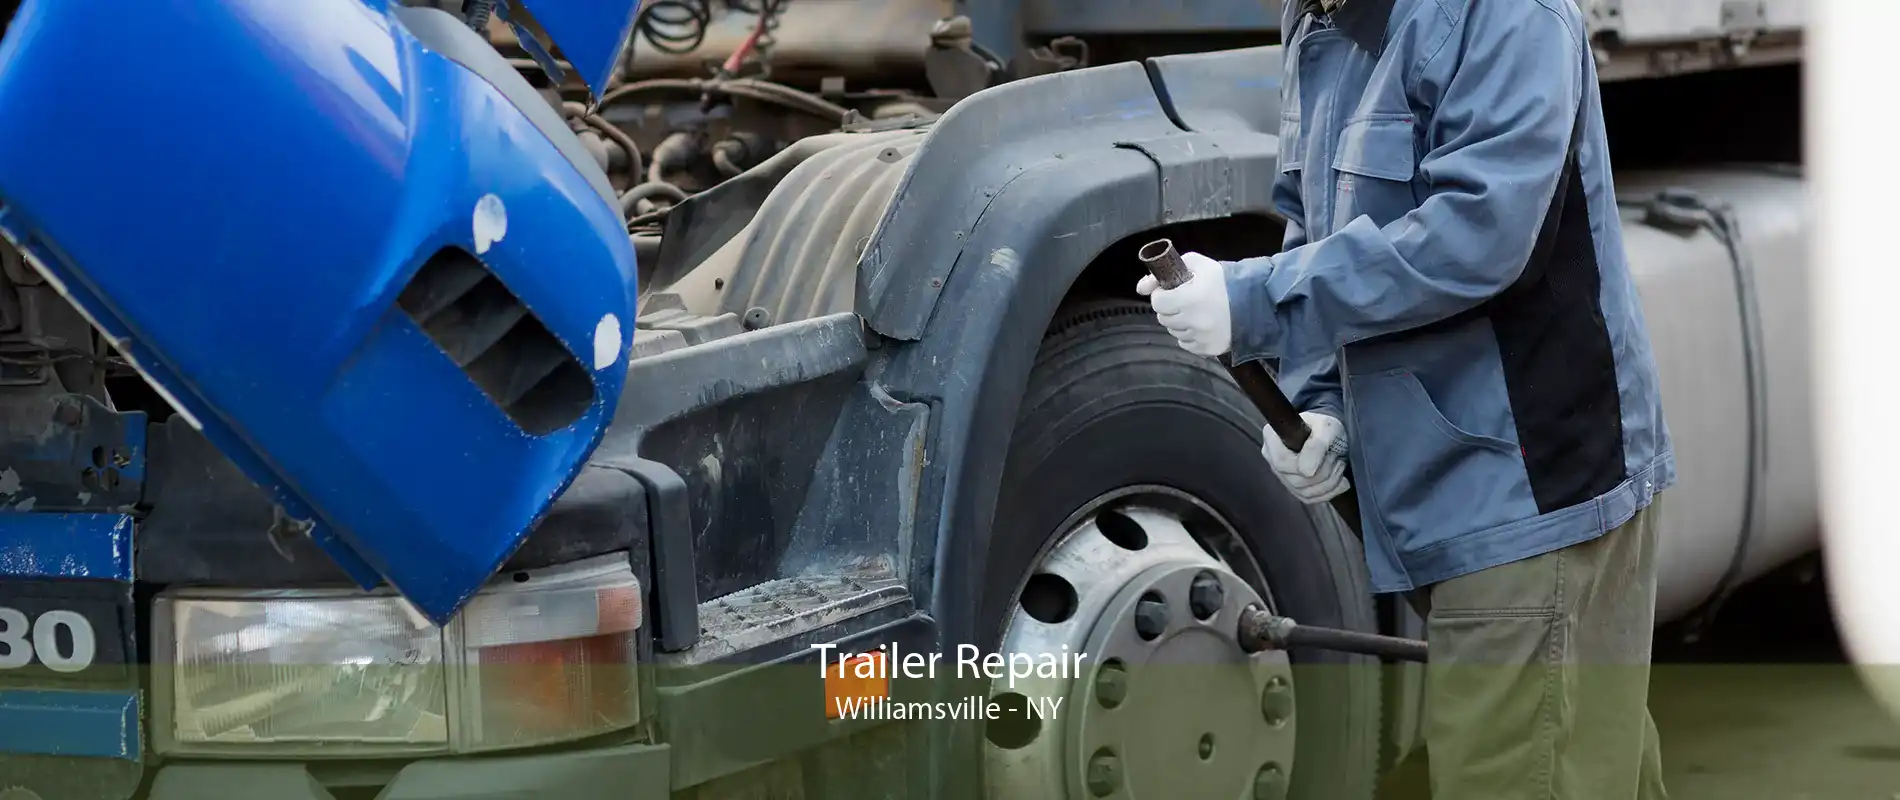 Trailer Repair Williamsville - NY